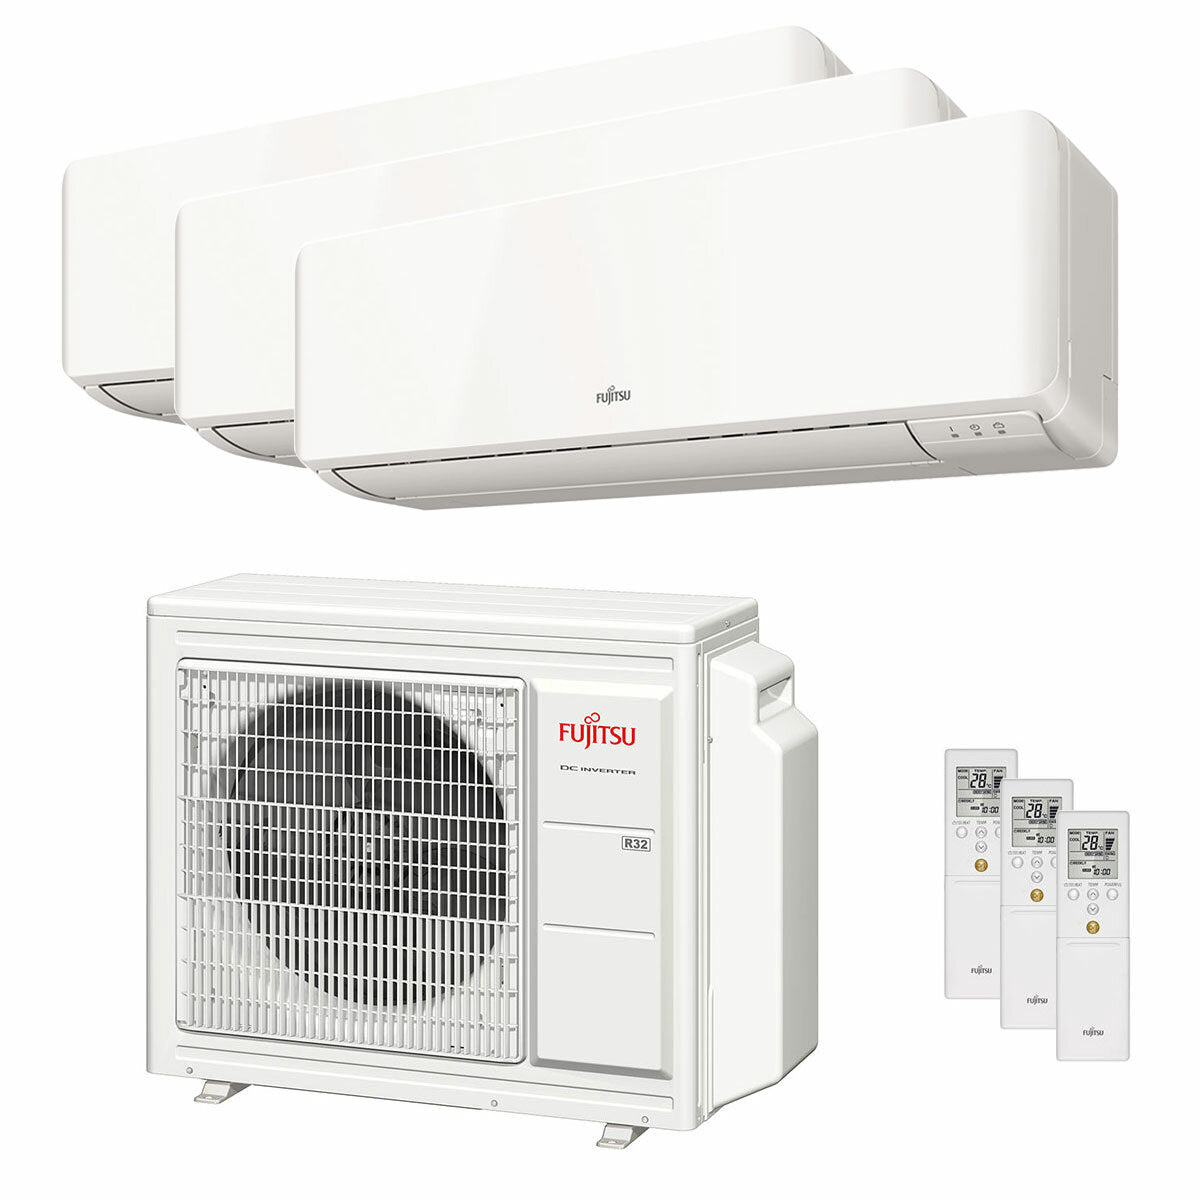 Climatiseur Fujitsu série KM WiFi essai split 7000+7000+9000 BTU inverter A+++ unité extérieure 5,4 kW